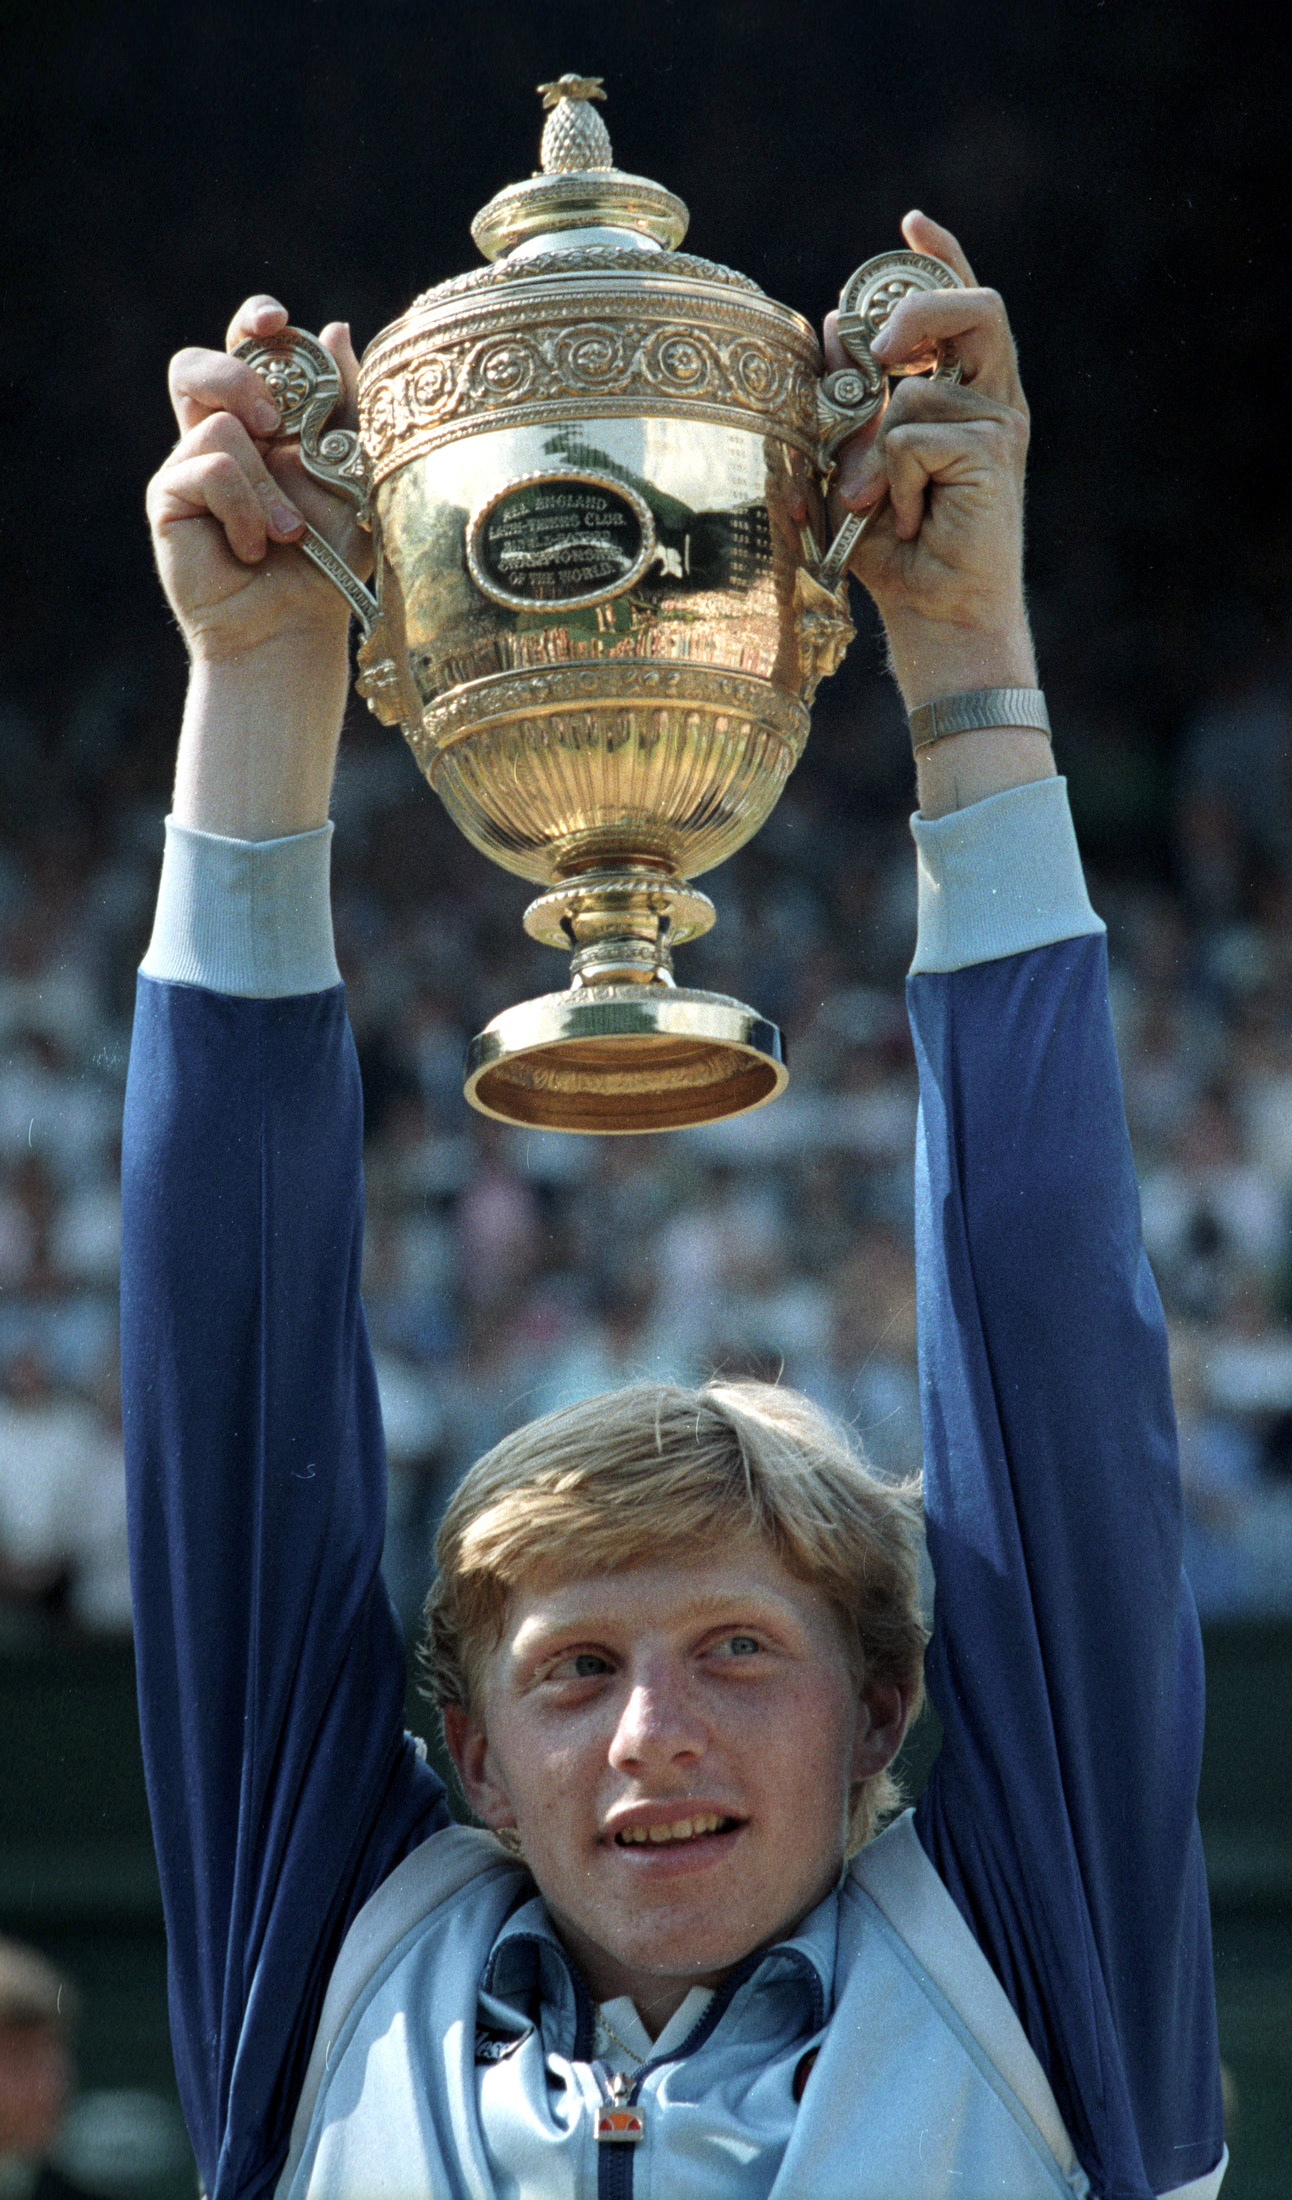 FOTO DE ARCHIVO: El alemán Boris Becker posa con el trofeo después de convertirse en el jugador más joven en ganar el campeonato masculino de tenis de Wimbledon el 7 de julio de 1985 en Londres. Becker derrotó al jugador estadounidense Kevin Curren REUTERS/Peter Skingley/Foto de archivo
